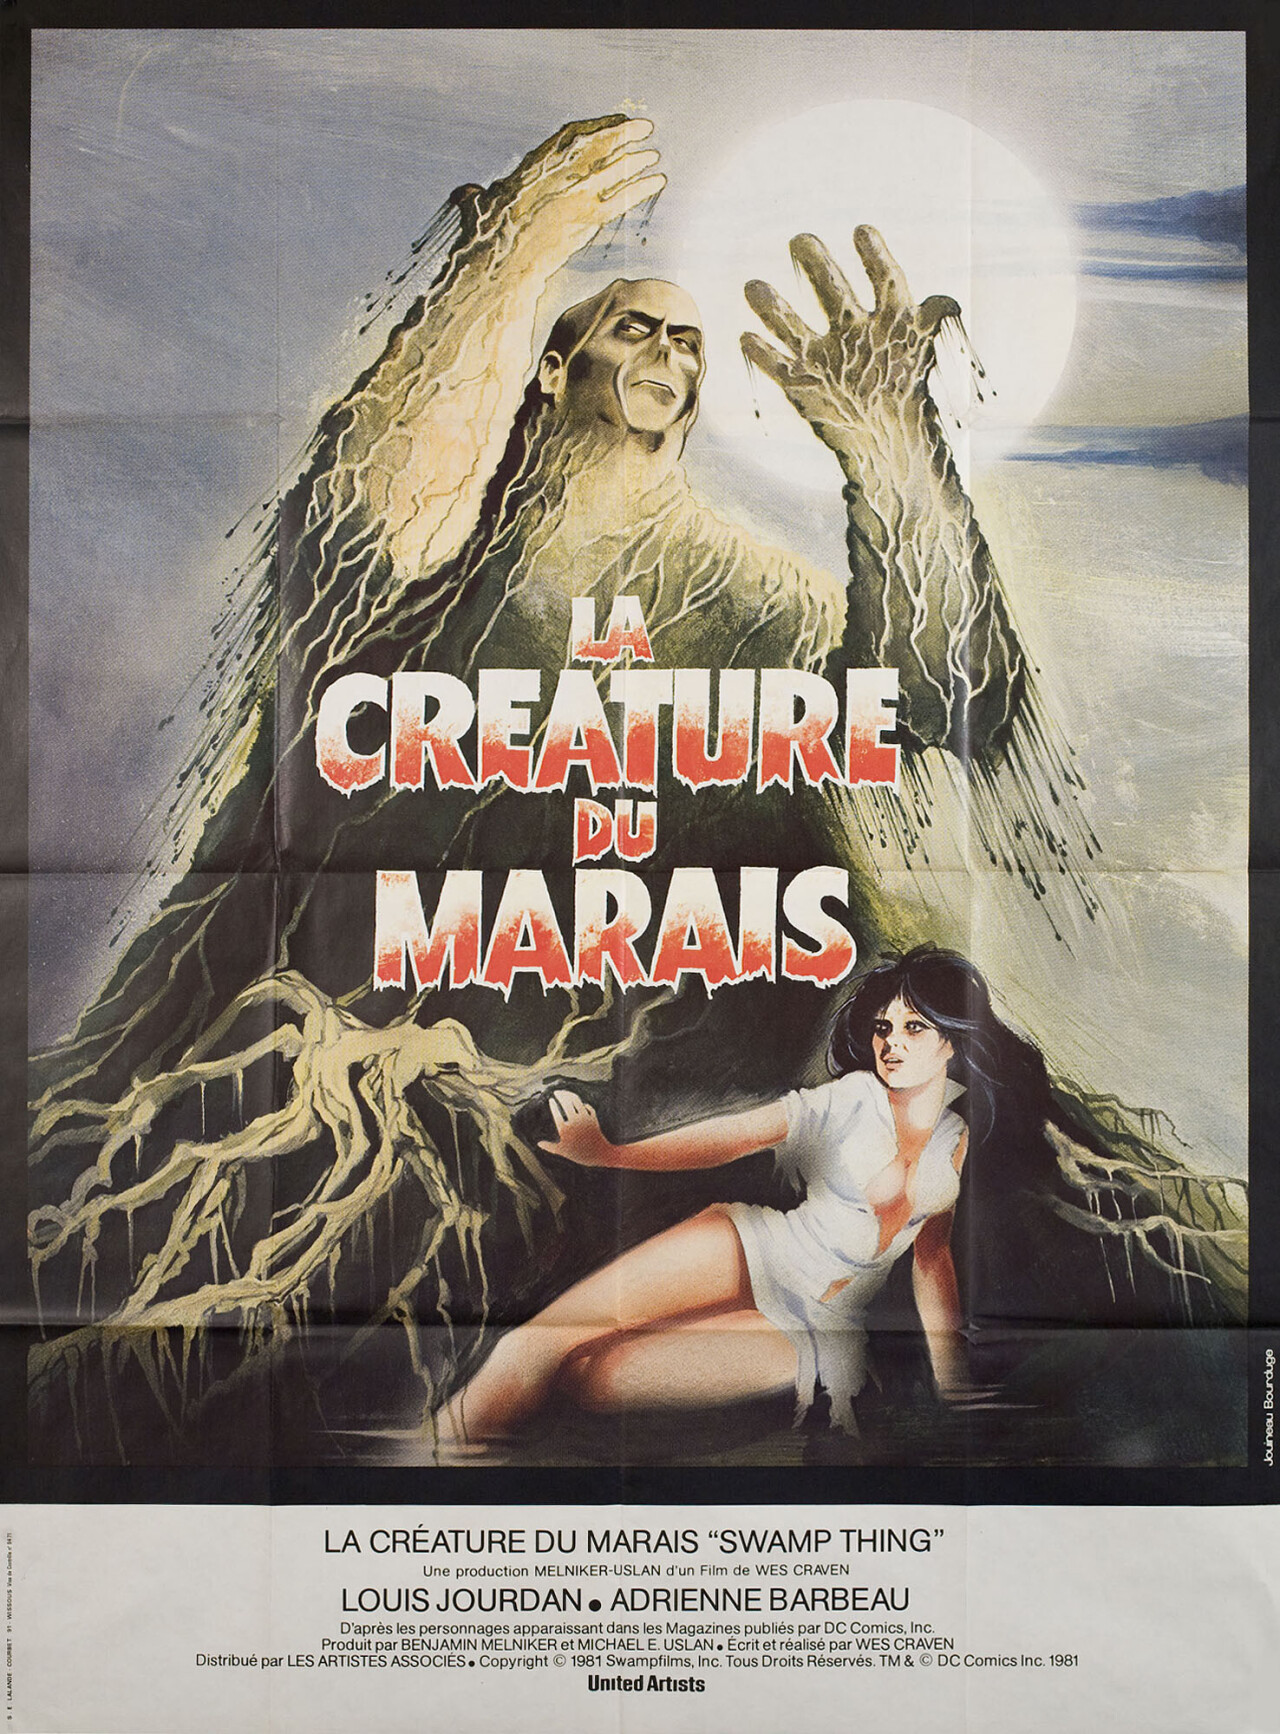 Болотная тварь (Swamp Thing, 1982), режиссёр Уэс Крэйвен, французский постер к фильму, автор Жуино Бурдюж (ужасы, 1982 год)